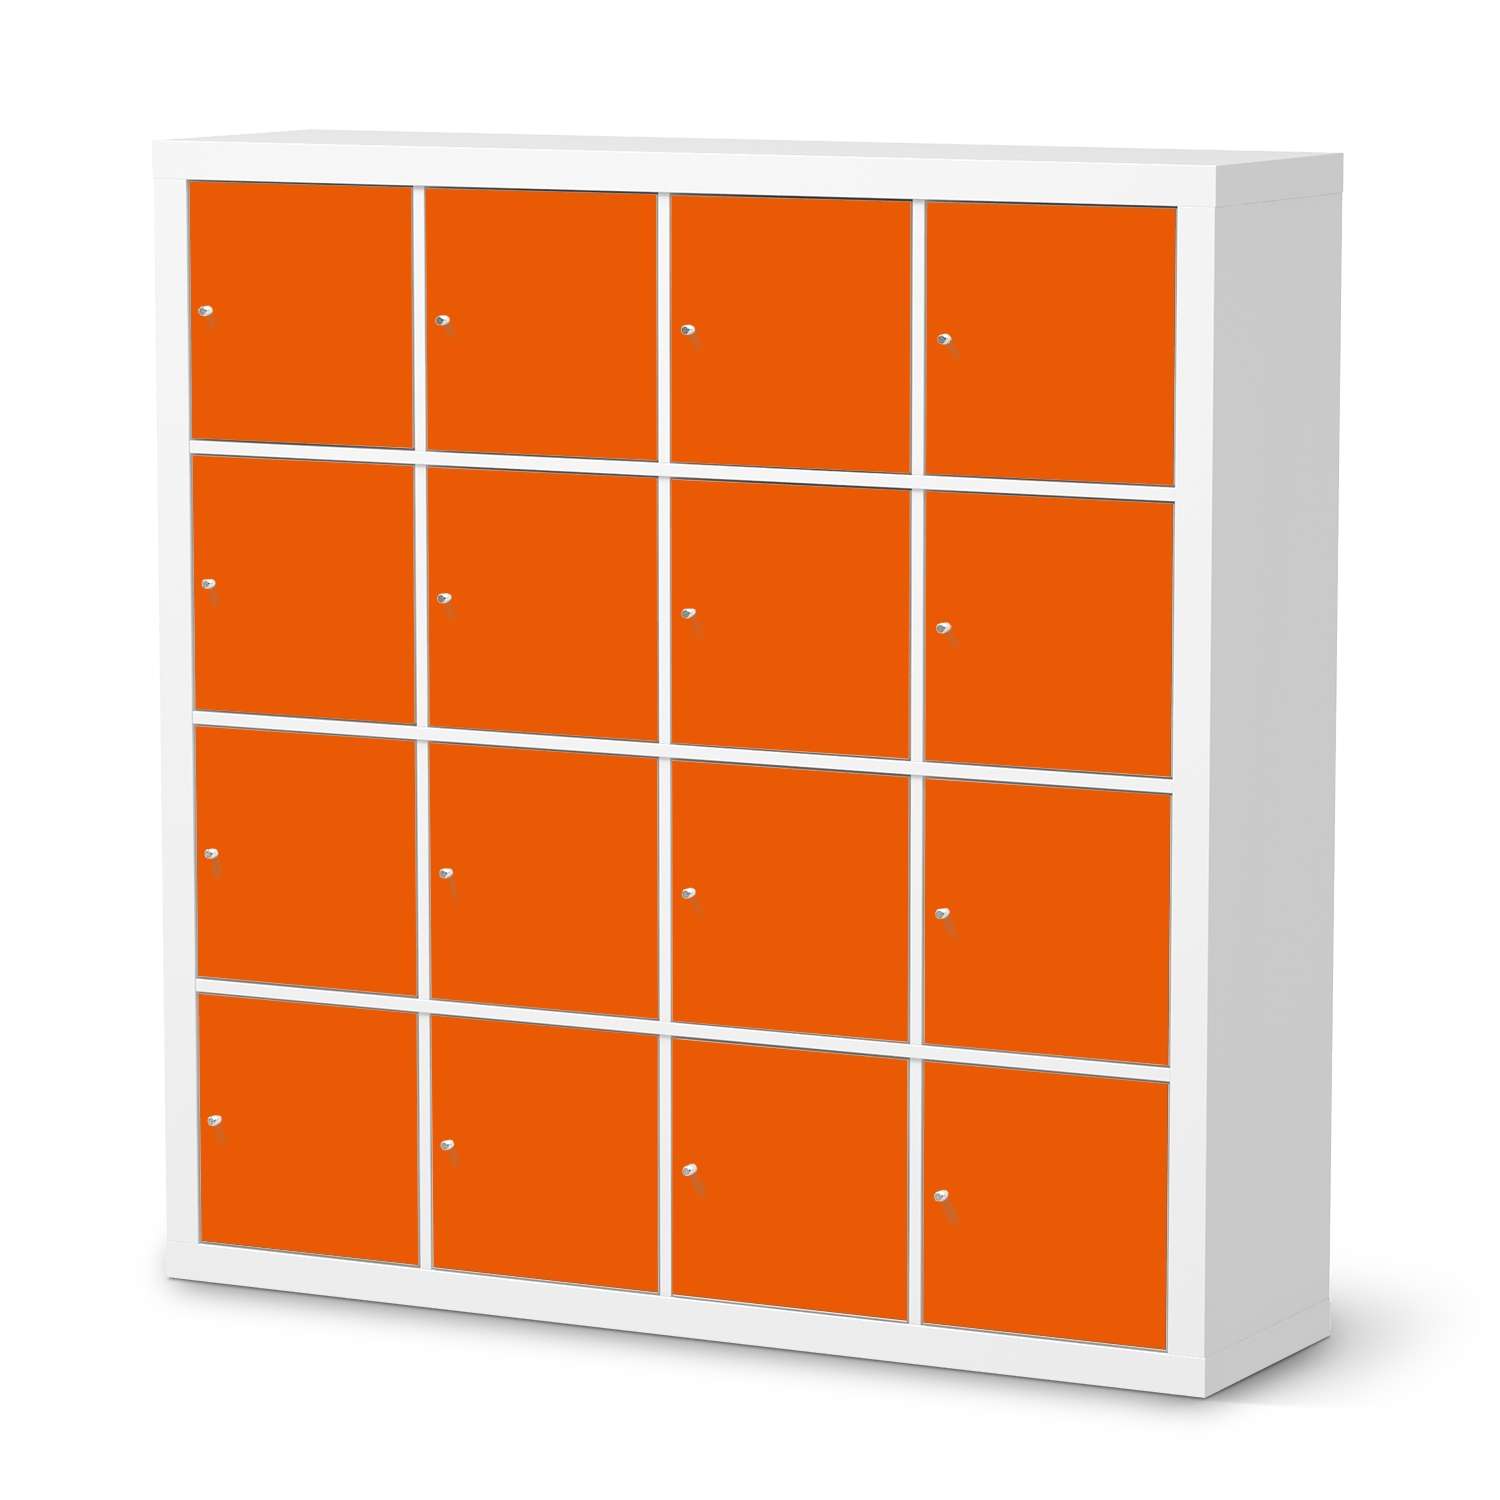 M?belfolie IKEA Kallax Regal 16 T?ren - Design: Orange Dark von creatisto